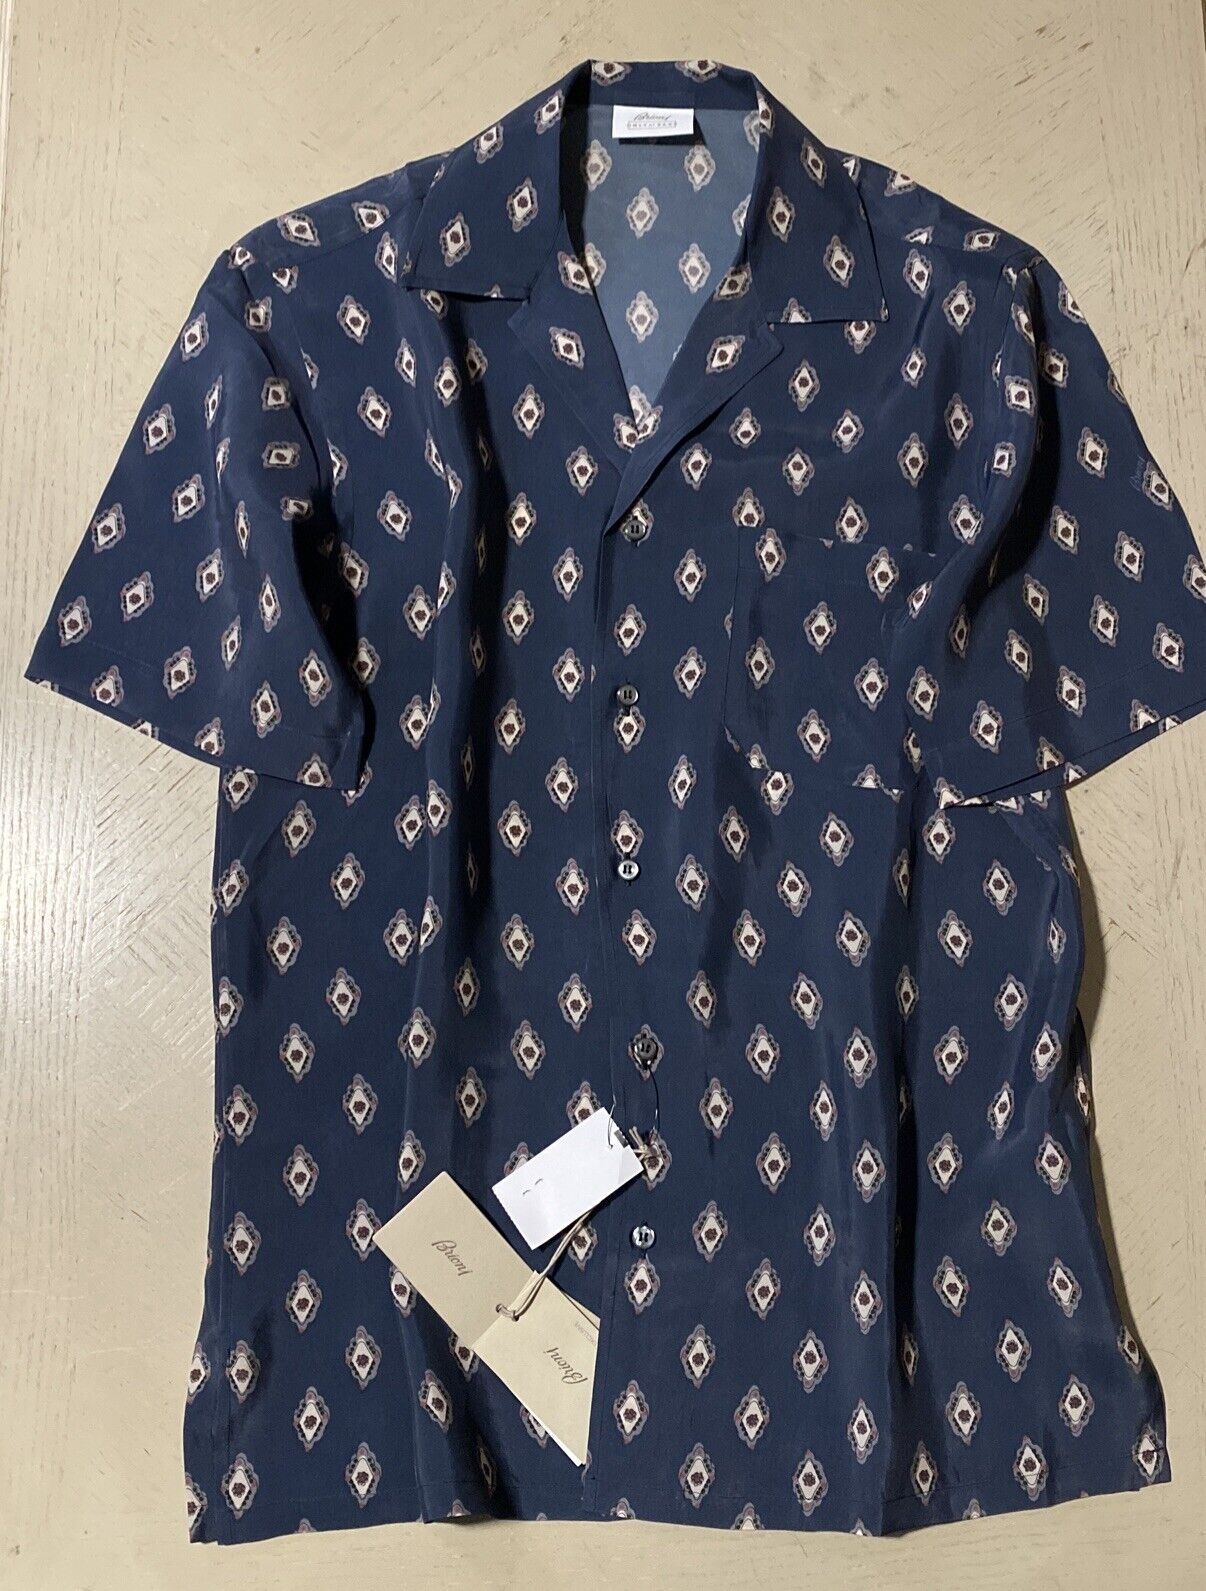 NWT 675 долларов США Эксклюзивная рубашка с короткими рукавами Brioni Cupro с принтом медальонов, синяя, M